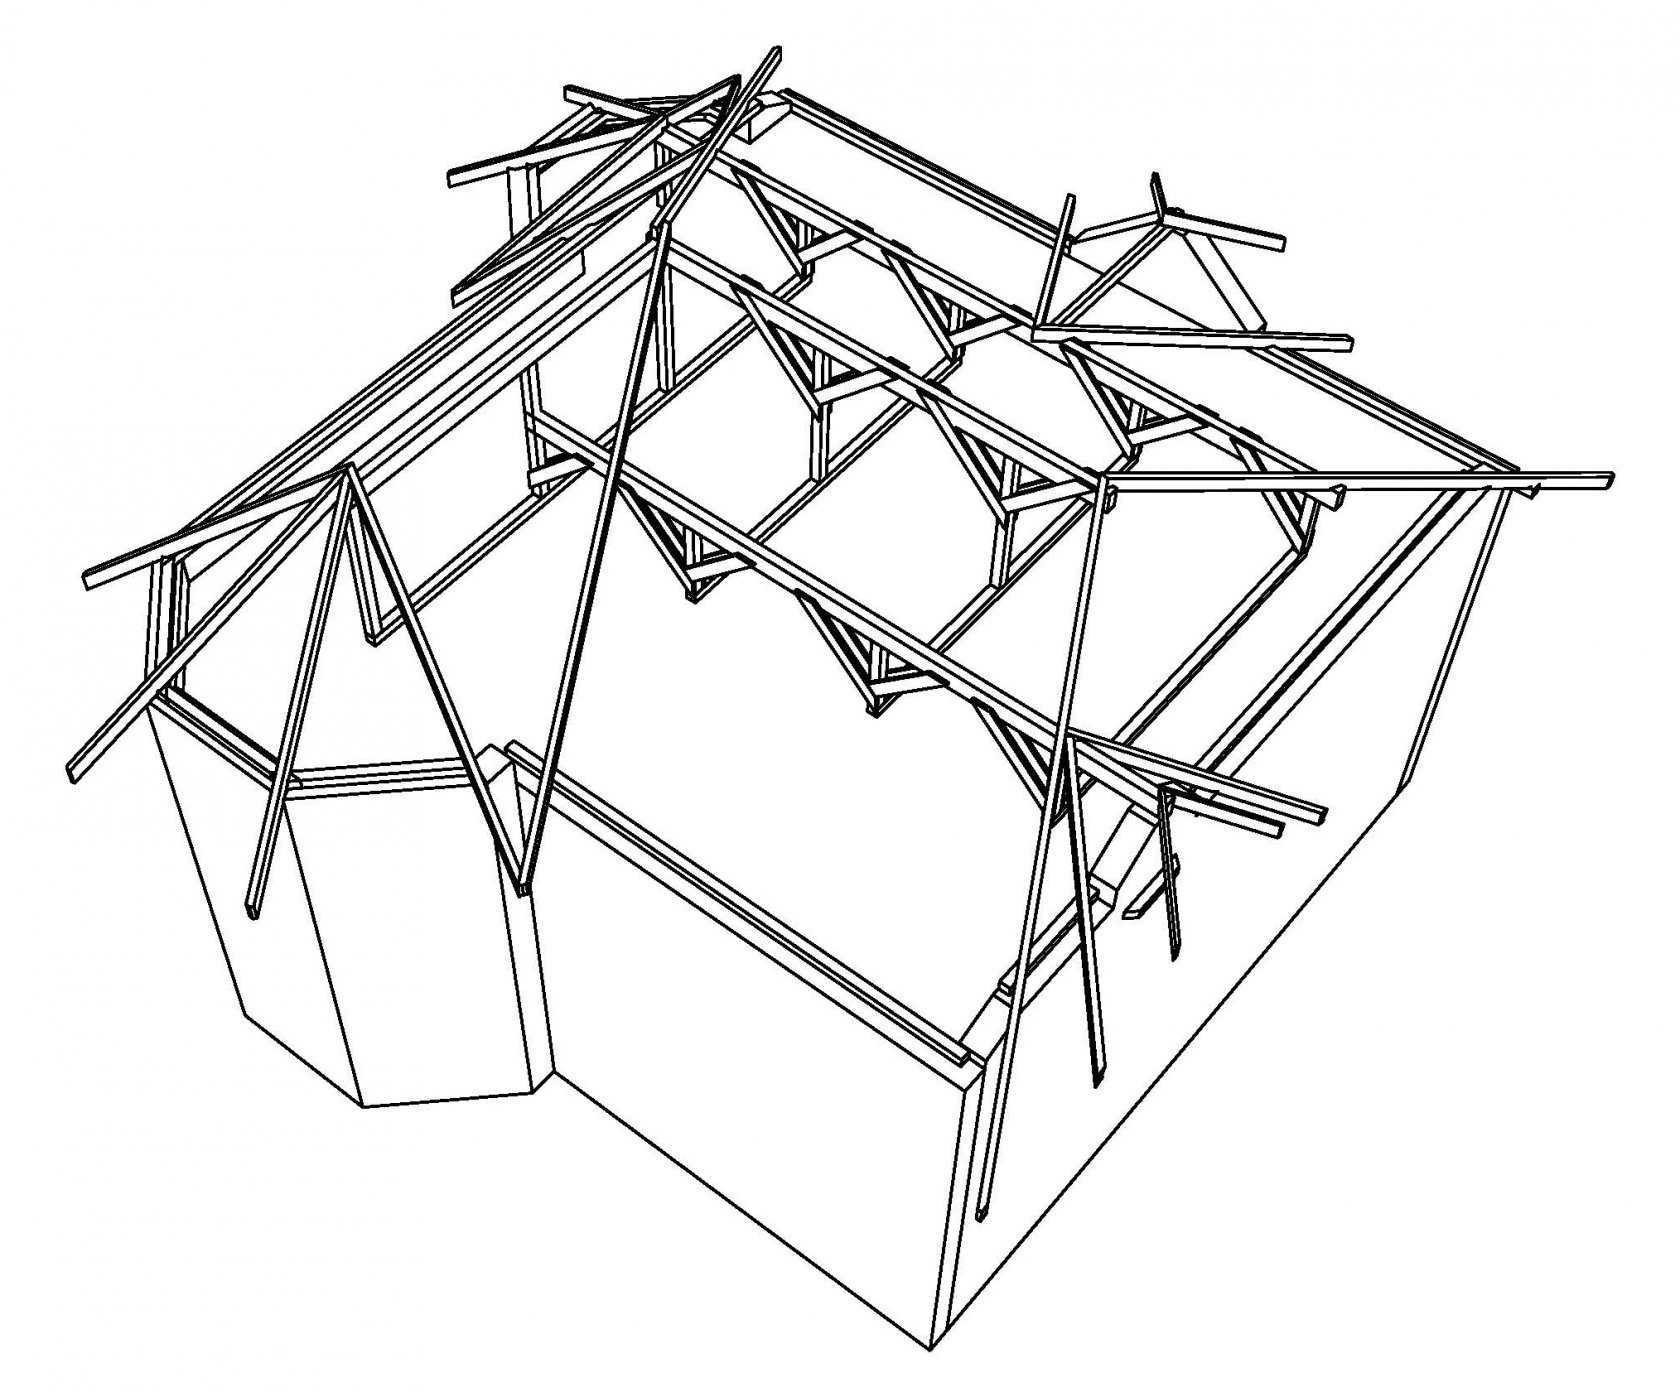 Вальмовая крыша: стропильная система и устройство стропил четыхерскатной крыши с эркером + фото чертежей и схем